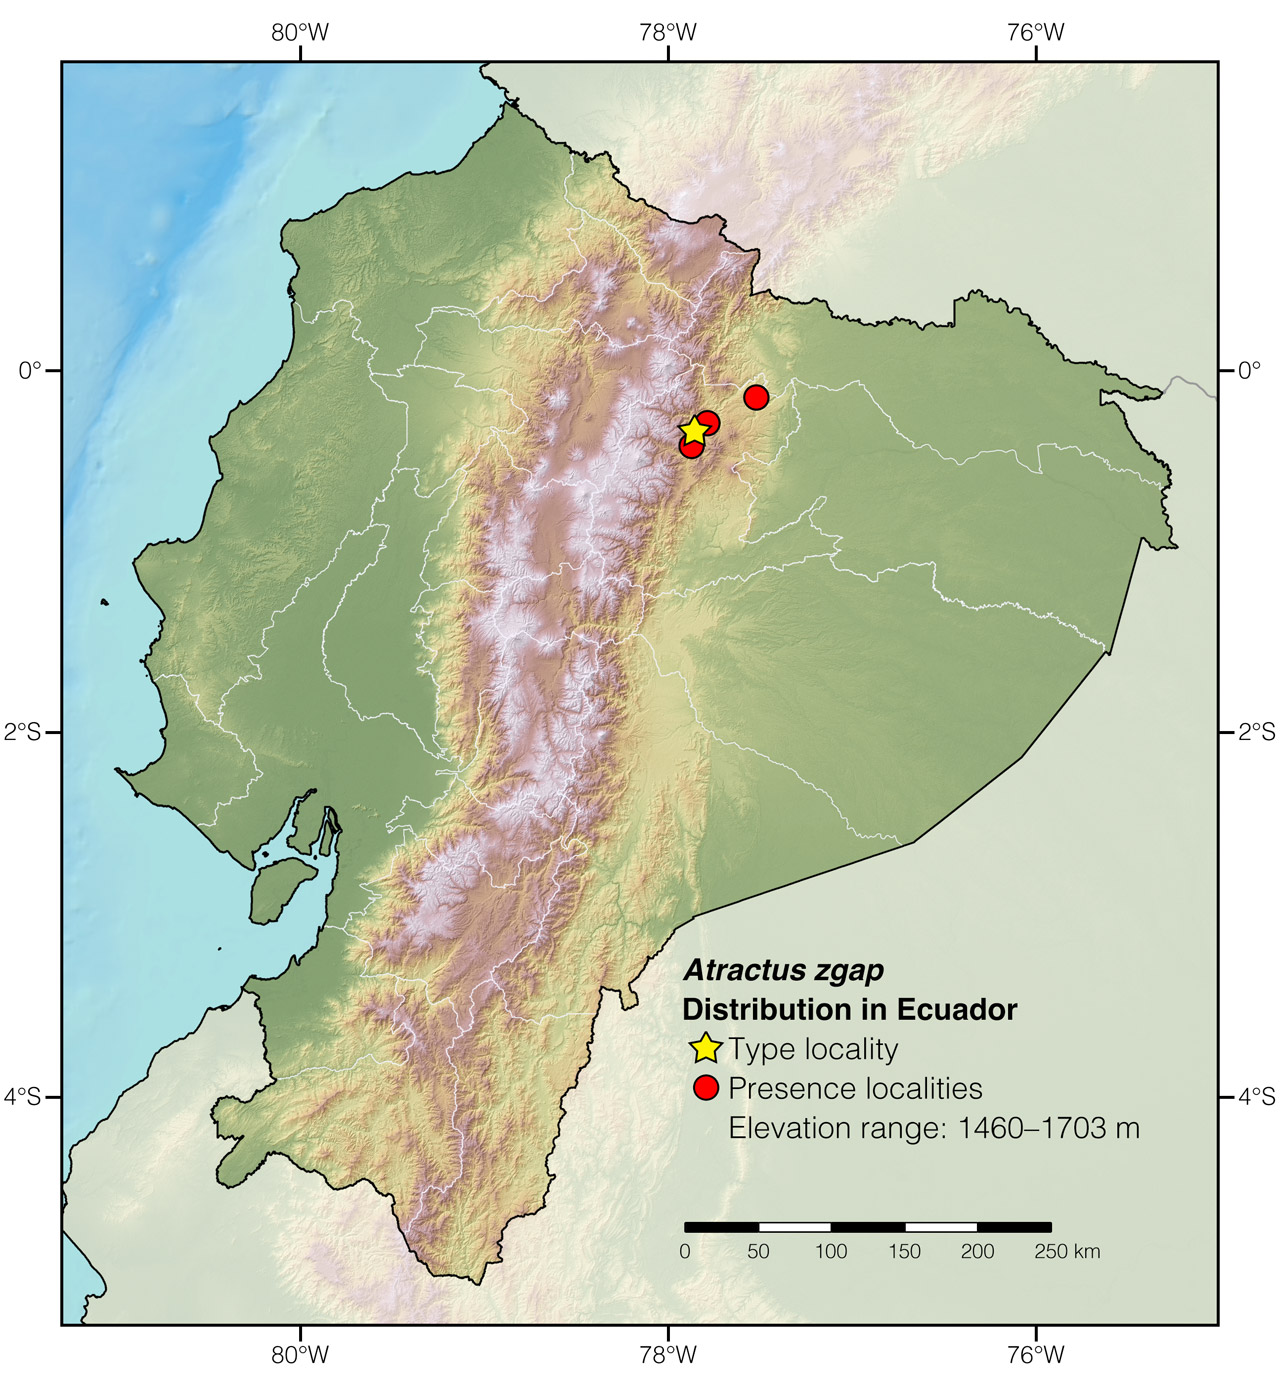 Distribution of Atractus zgap in Ecuador